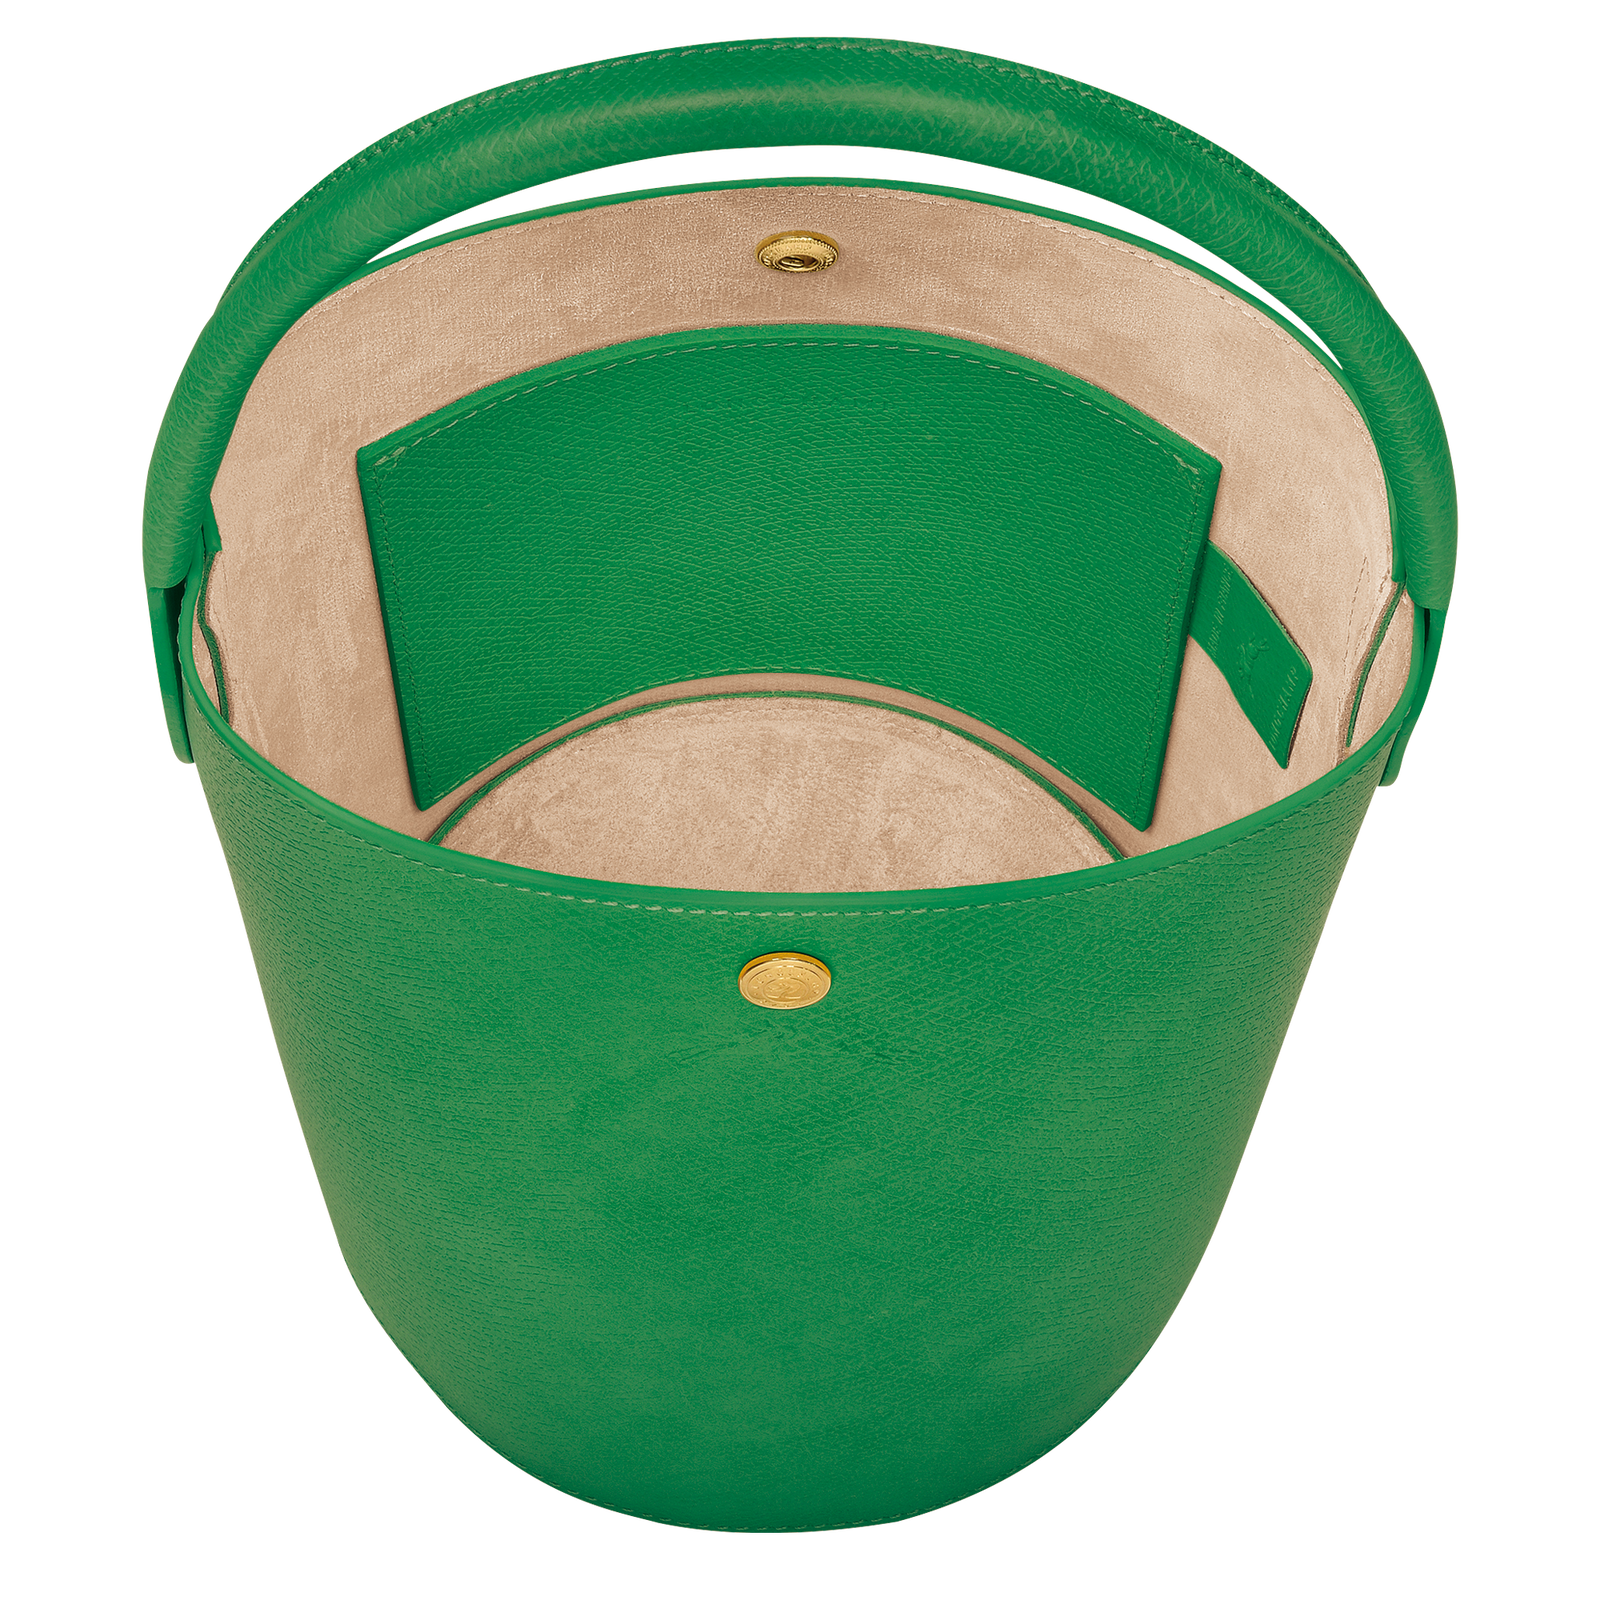 Épure 水桶包 S, 綠色